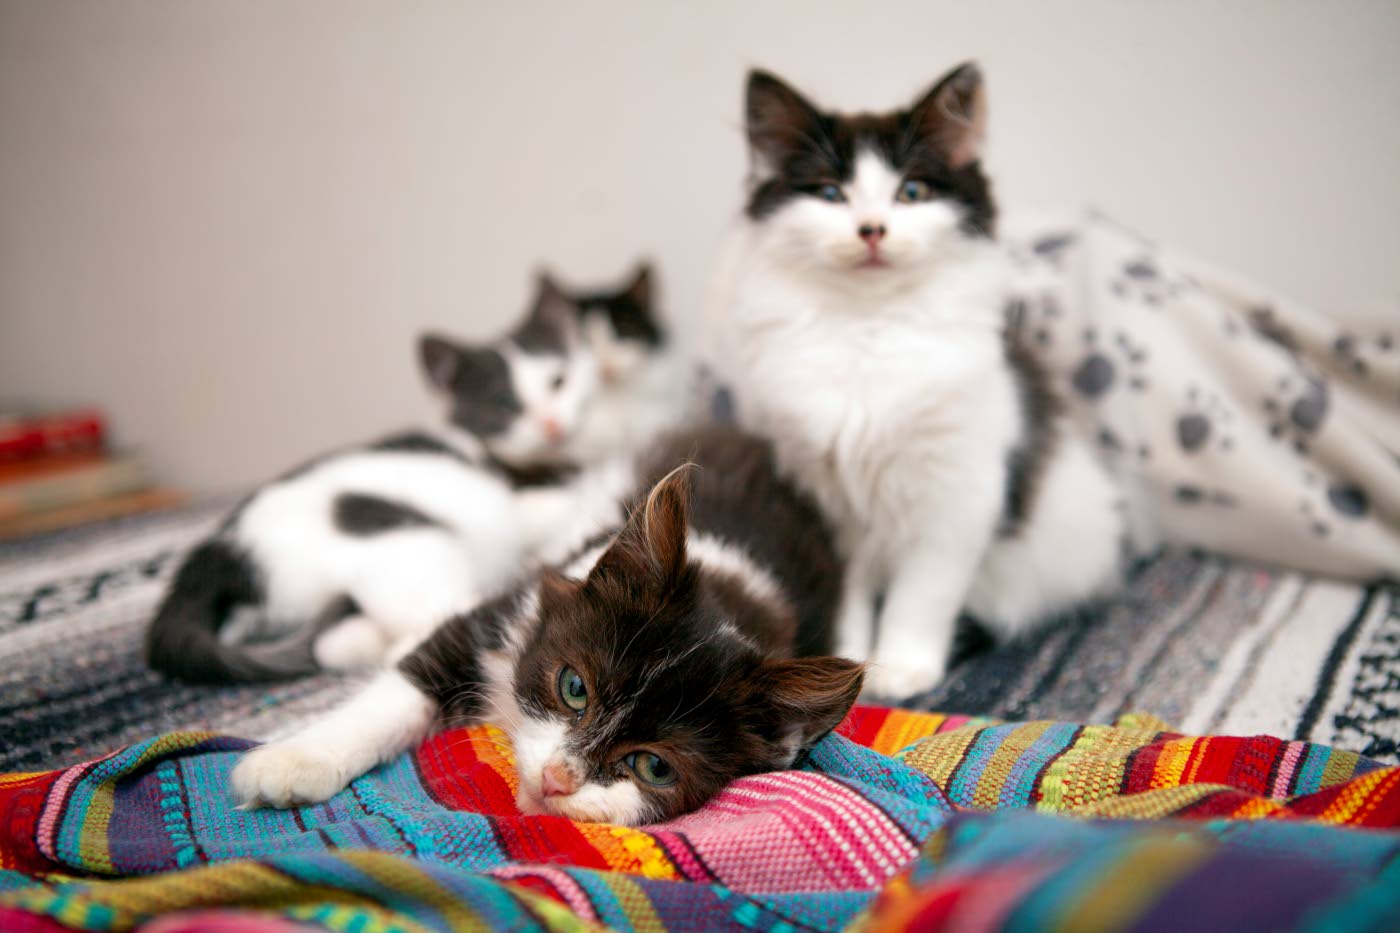 Helsinkiläispari purkaa kissakriisiä omassa kodissaan – KU